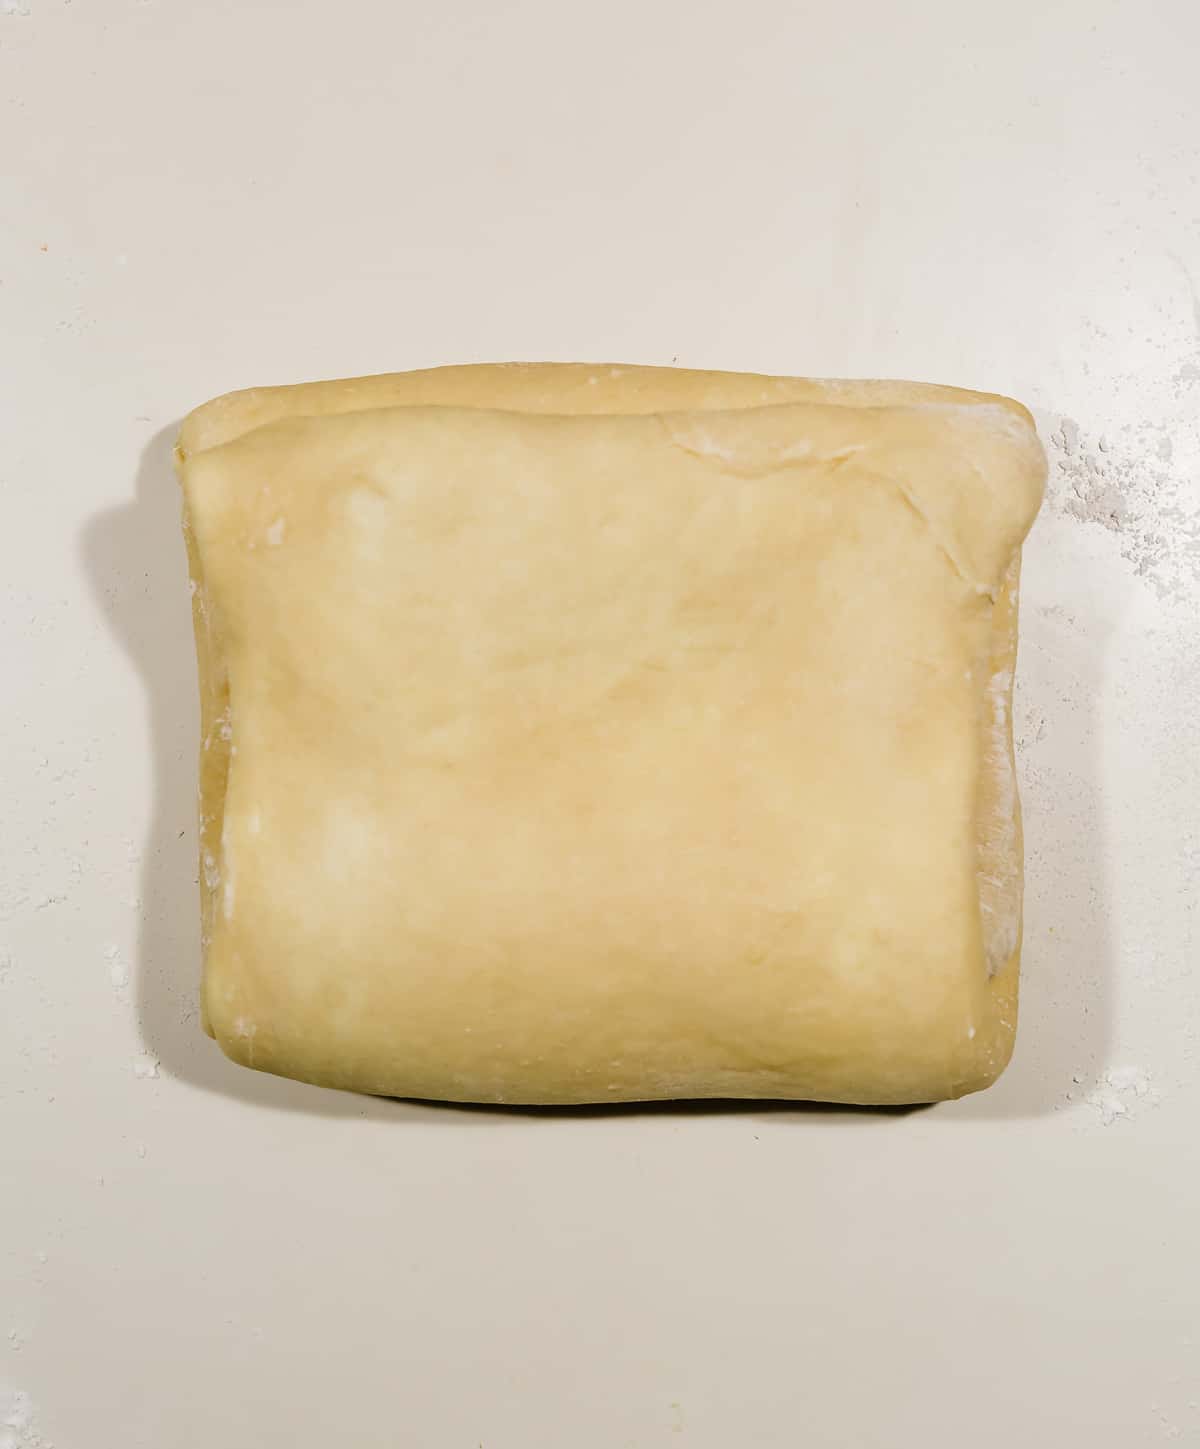 A square of flaky brioche bread dough on a white countertop. 